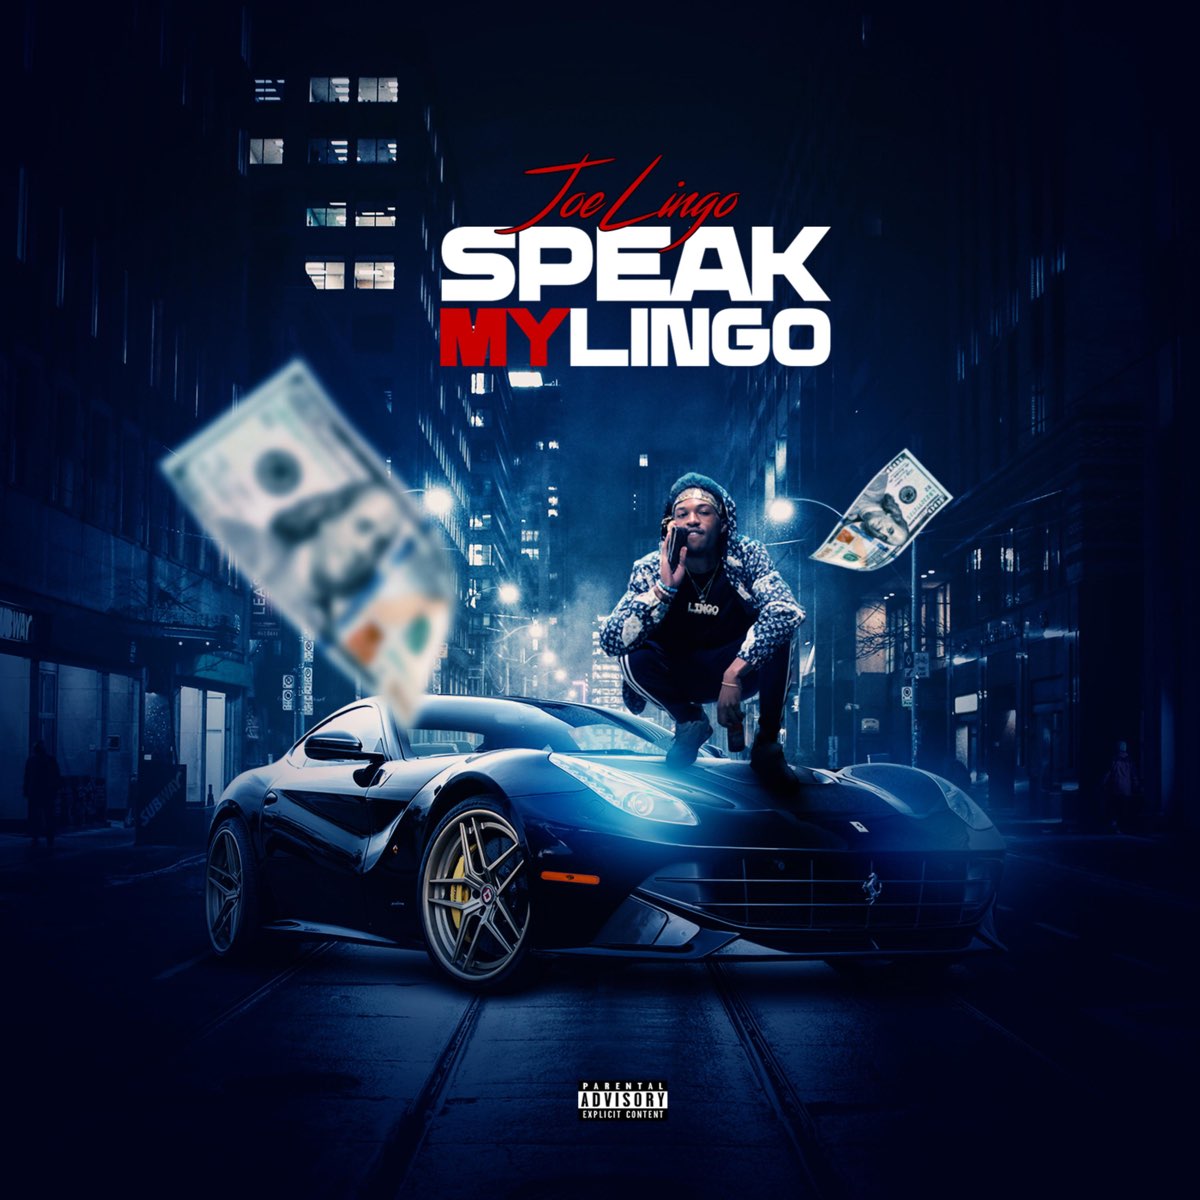 Speak My Lingo - Album by JoeLingo - Apple Music